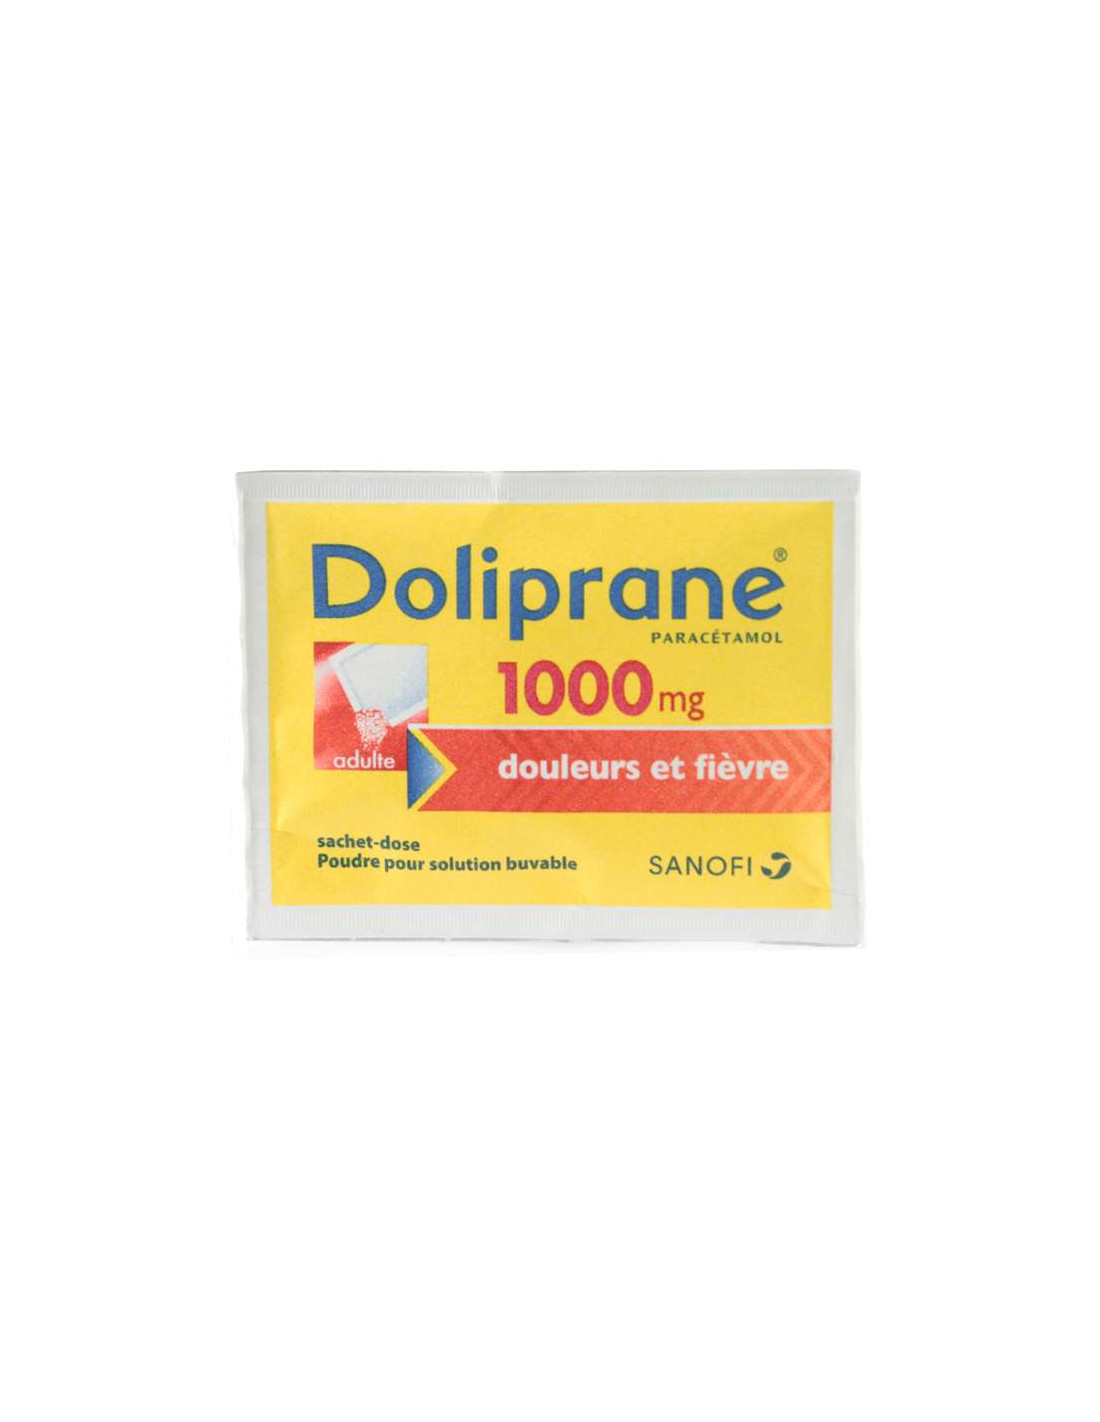 Doliprane 1000 mg 8 sachets poudre - Médicament antalgique et antipyrétique